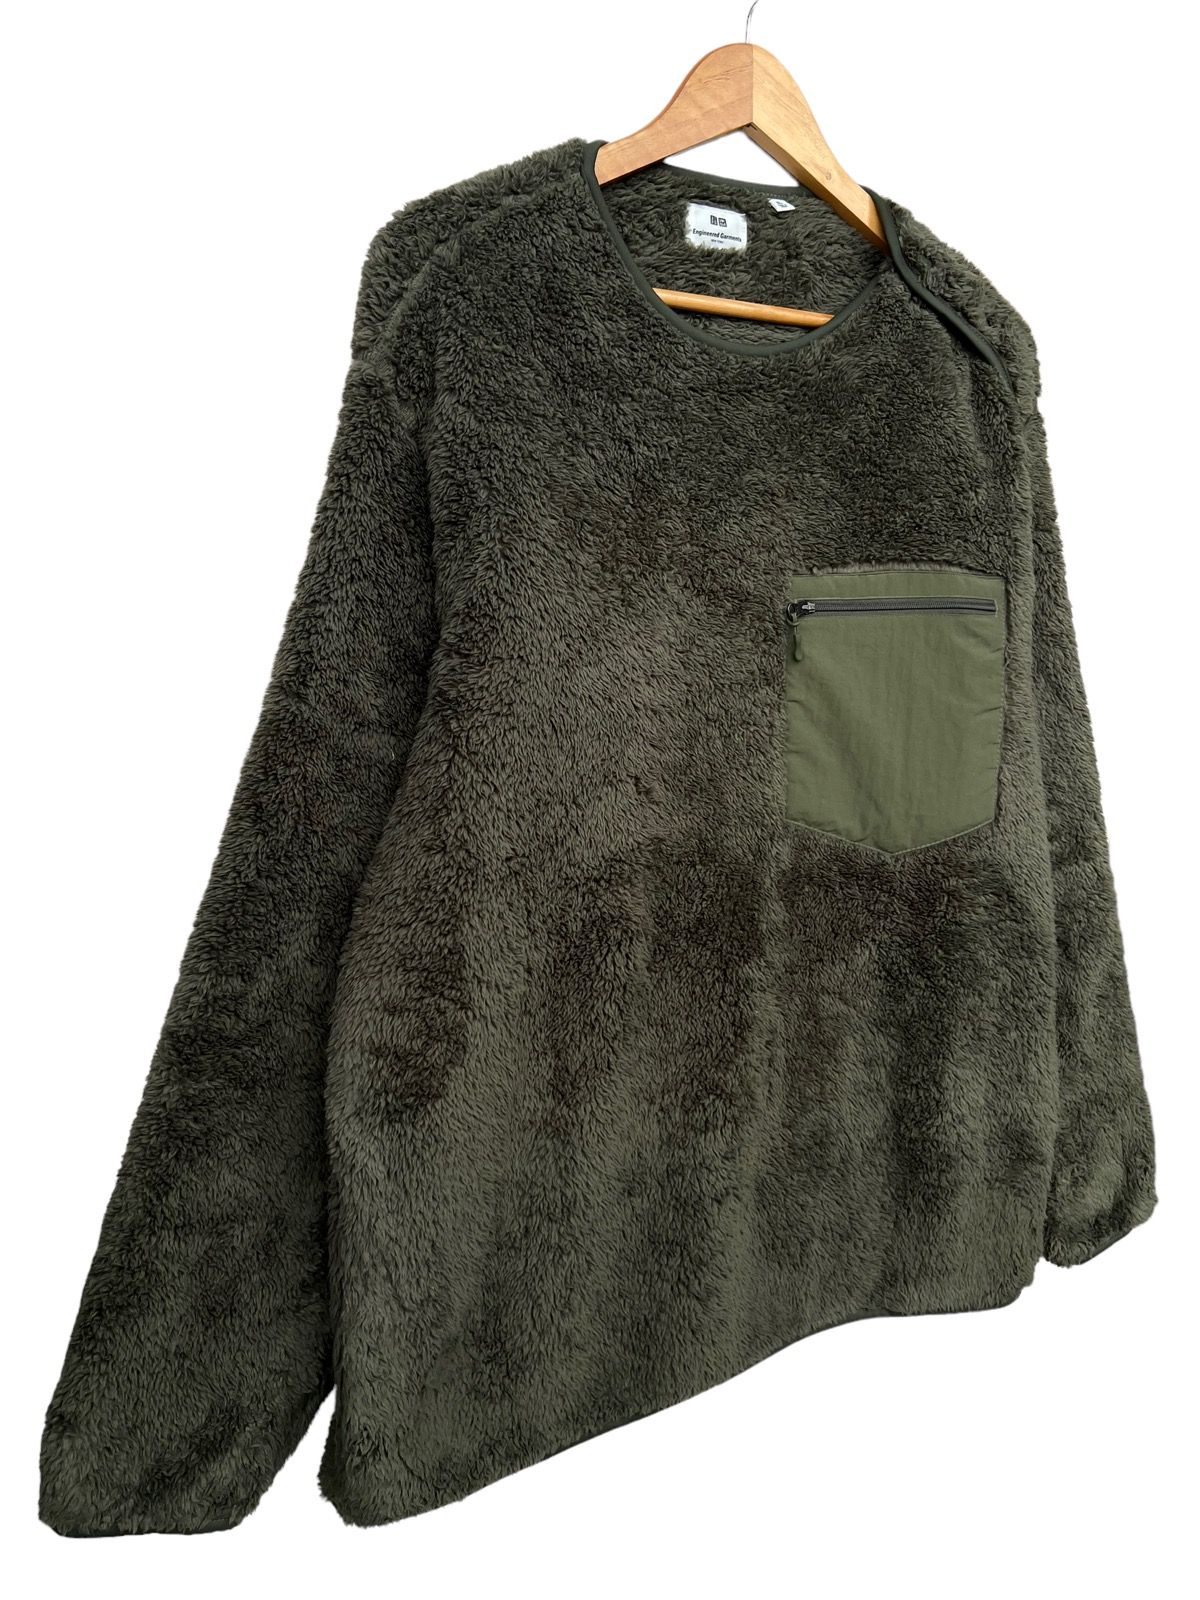 Engineered Garment Uniqlo Fleece Sweater - 5